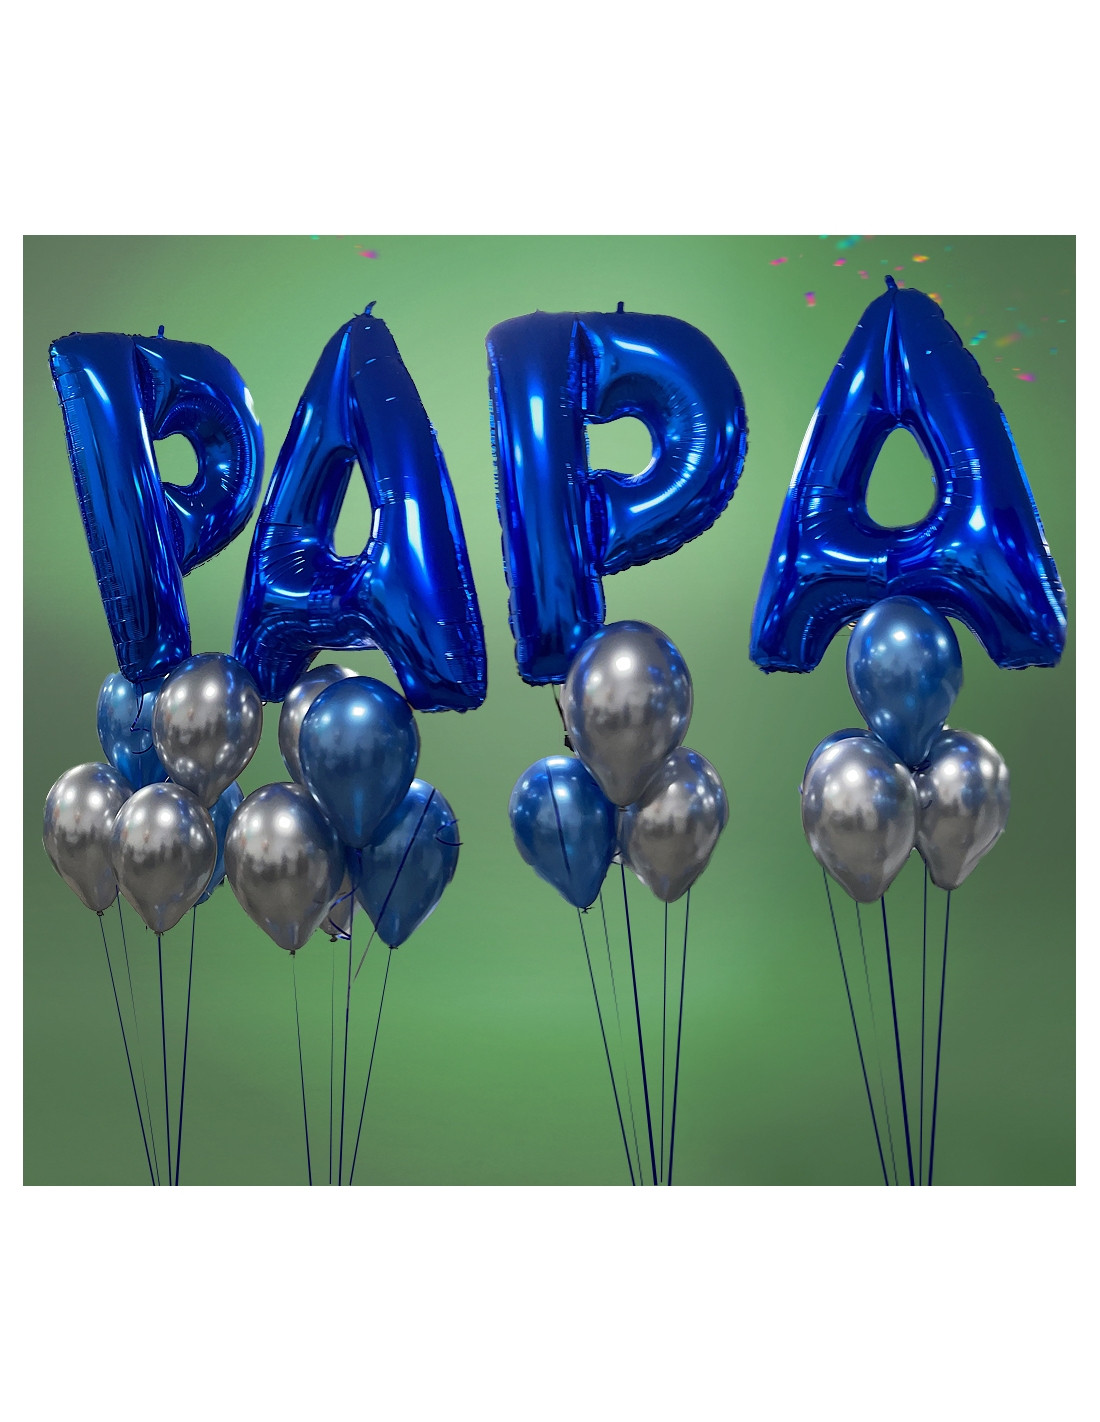 Pocoyo - Suministros para fiestas de cumpleaños infantiles, decoración de  ramo de globos